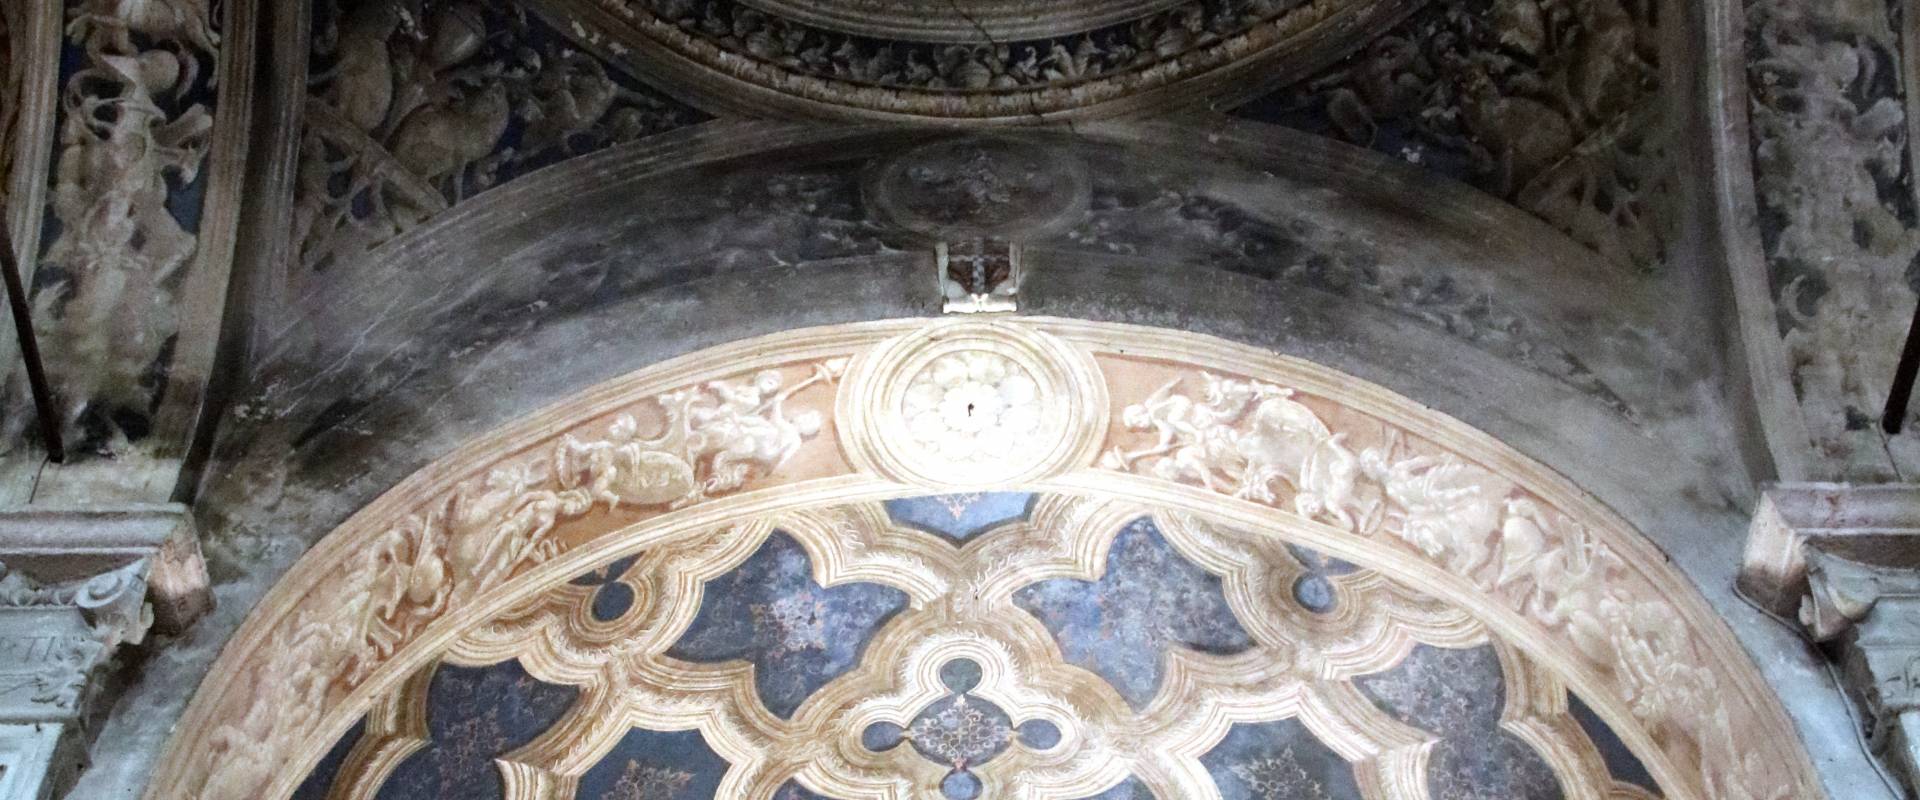 Chiesa di San Sisto (Piacenza), interno 21 foto di Mongolo1984